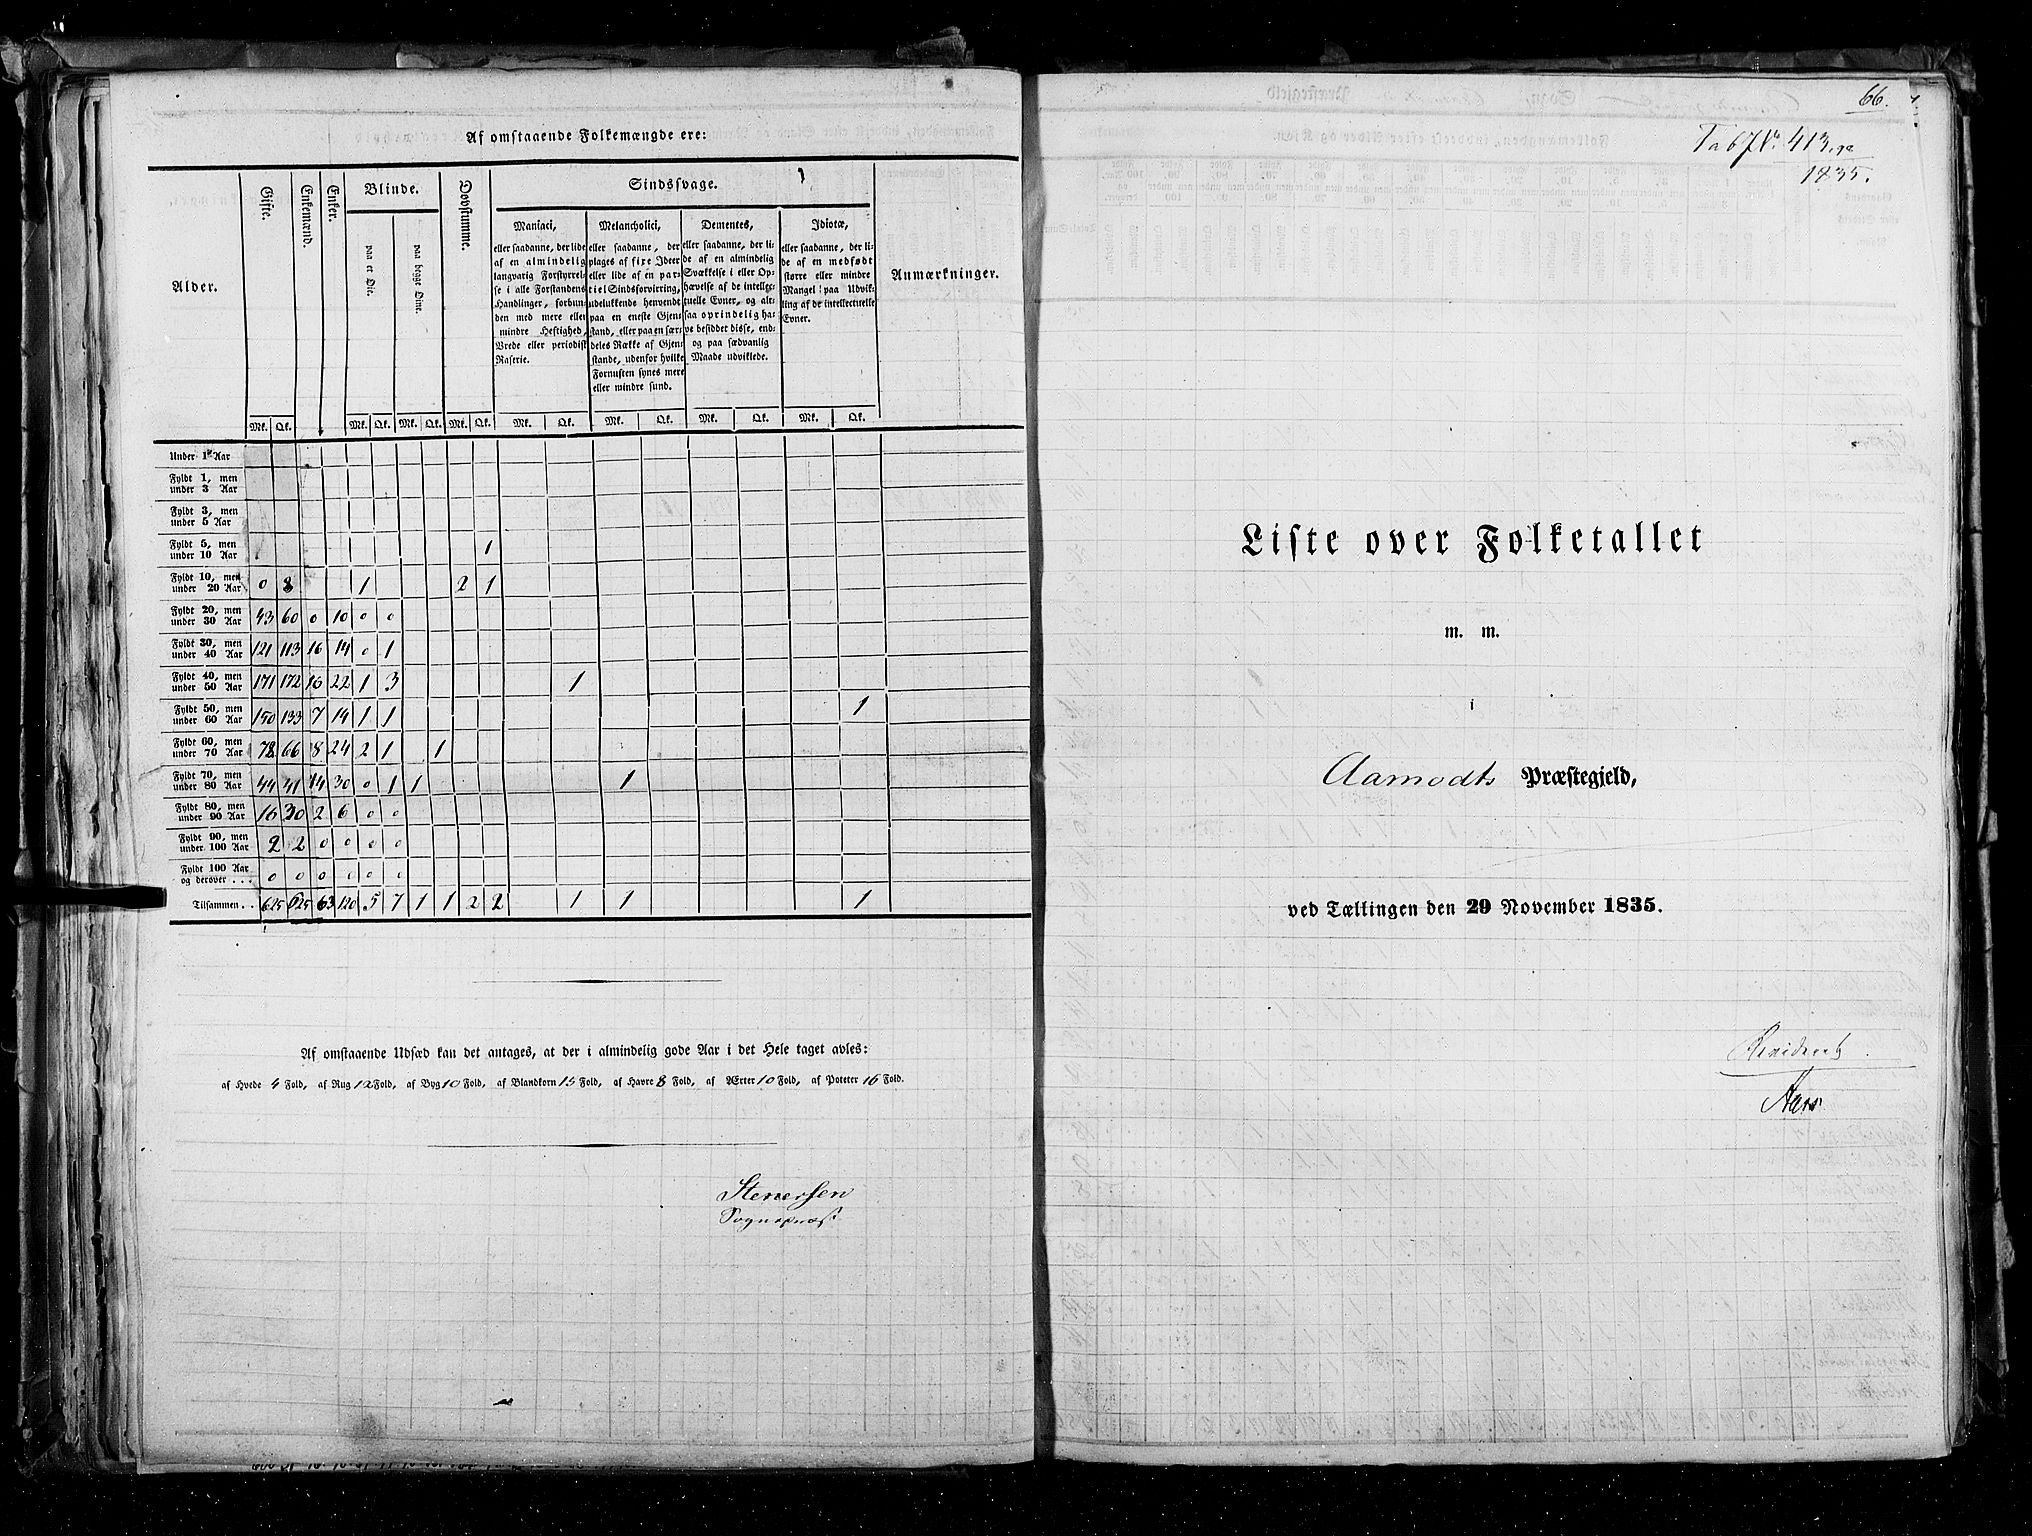 RA, Census 1835, vol. 3: Hedemarken amt og Kristians amt, 1835, p. 66